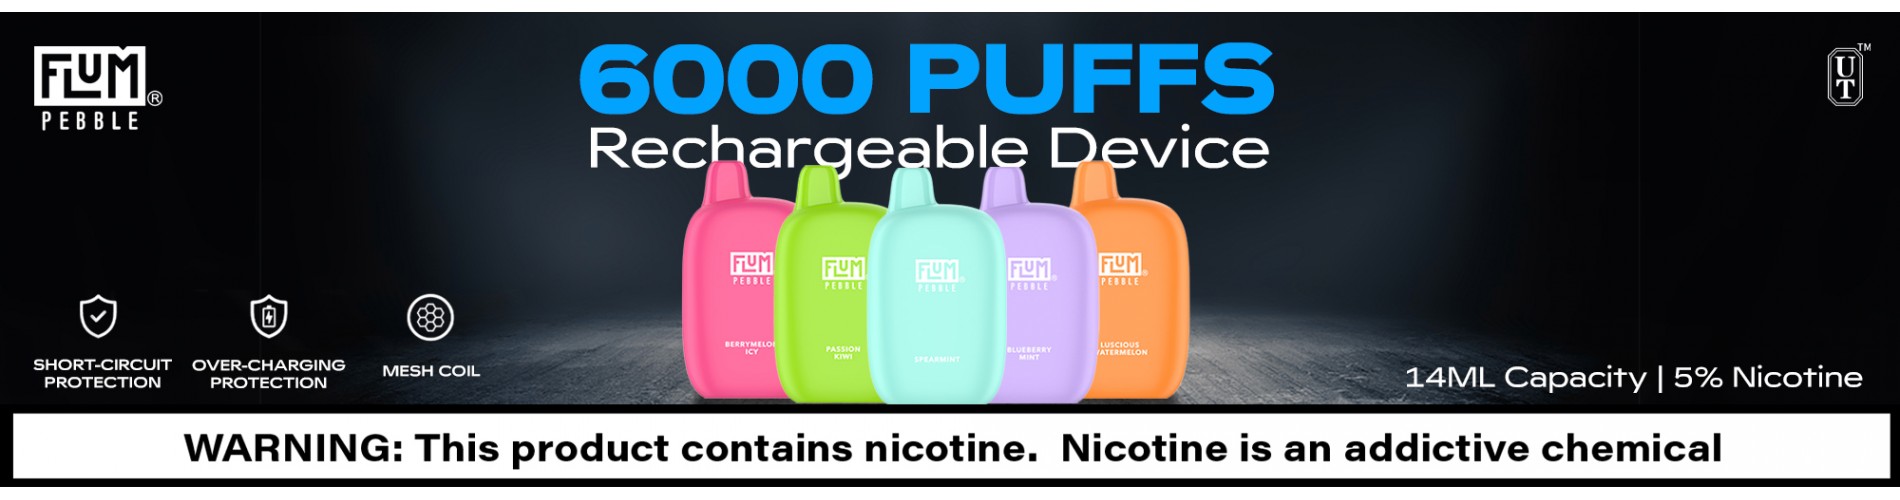 Flum Pebble - 6000 Puff Rechargeable Disposable Vape